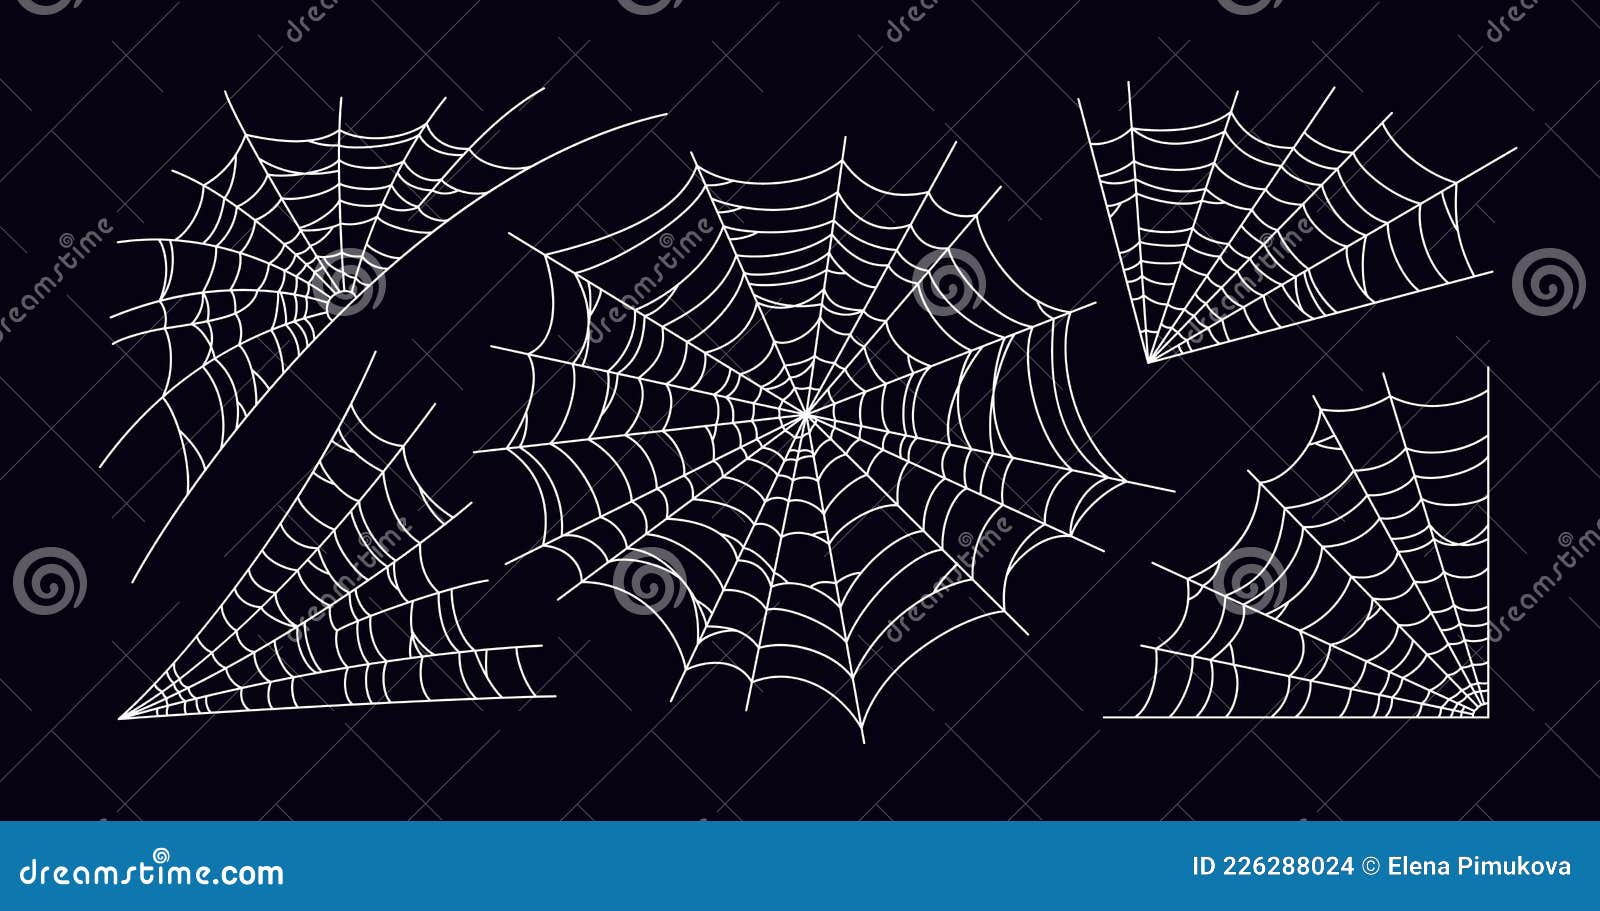 Desenho De Halloween Mão Desenhada Teias De Aranhas Assustadoras